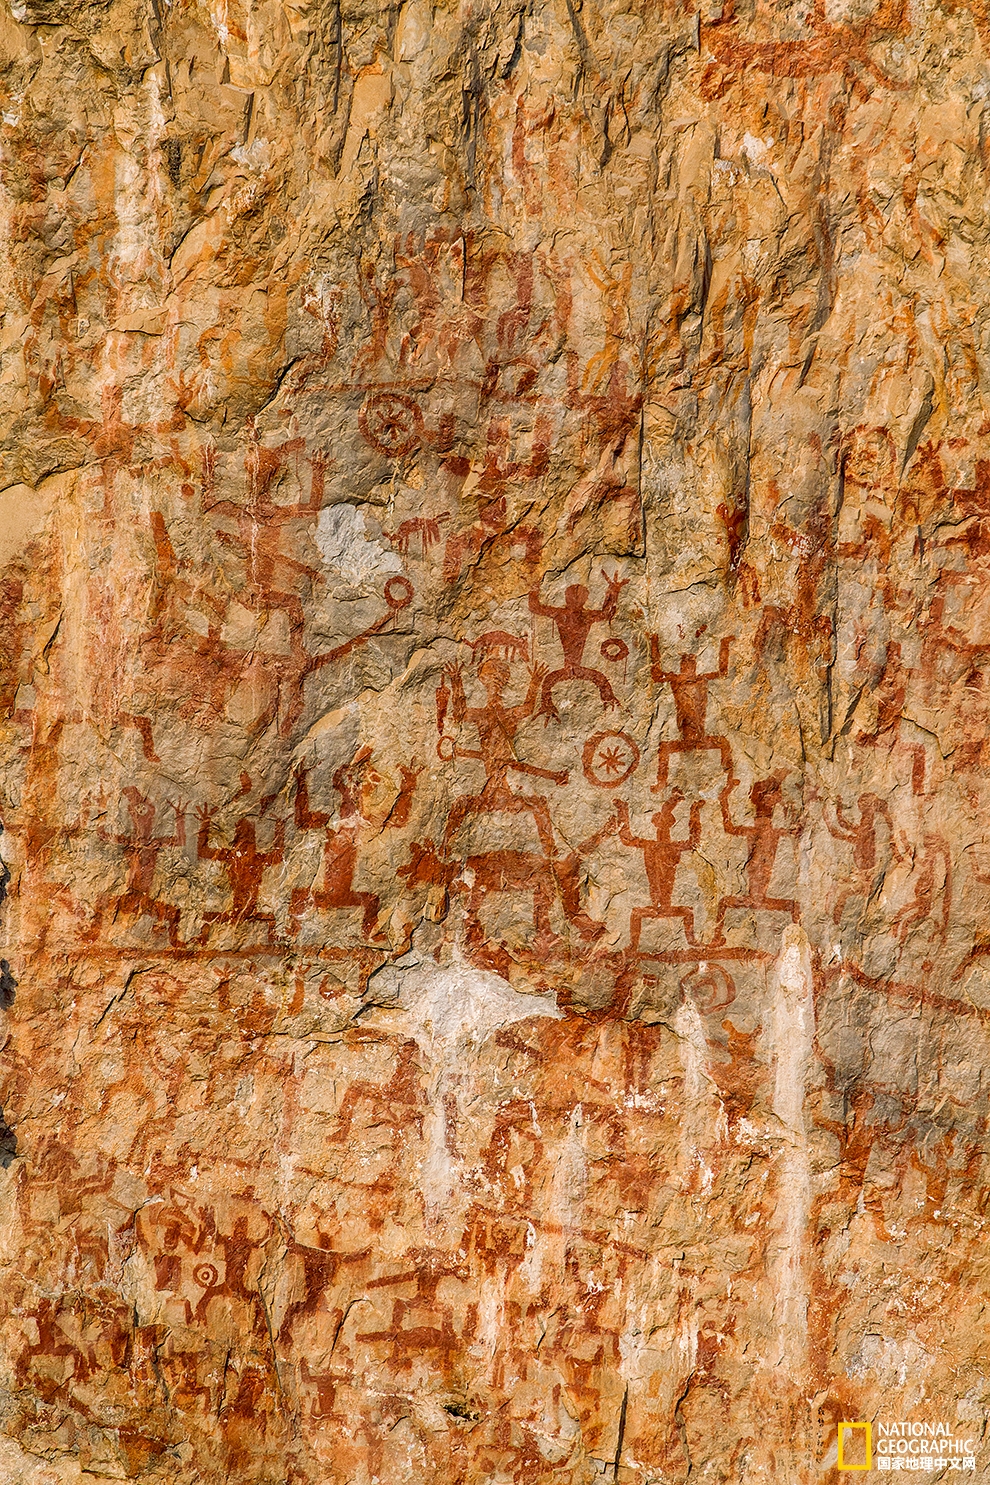 花山岩画 骆越文明的史诗图卷